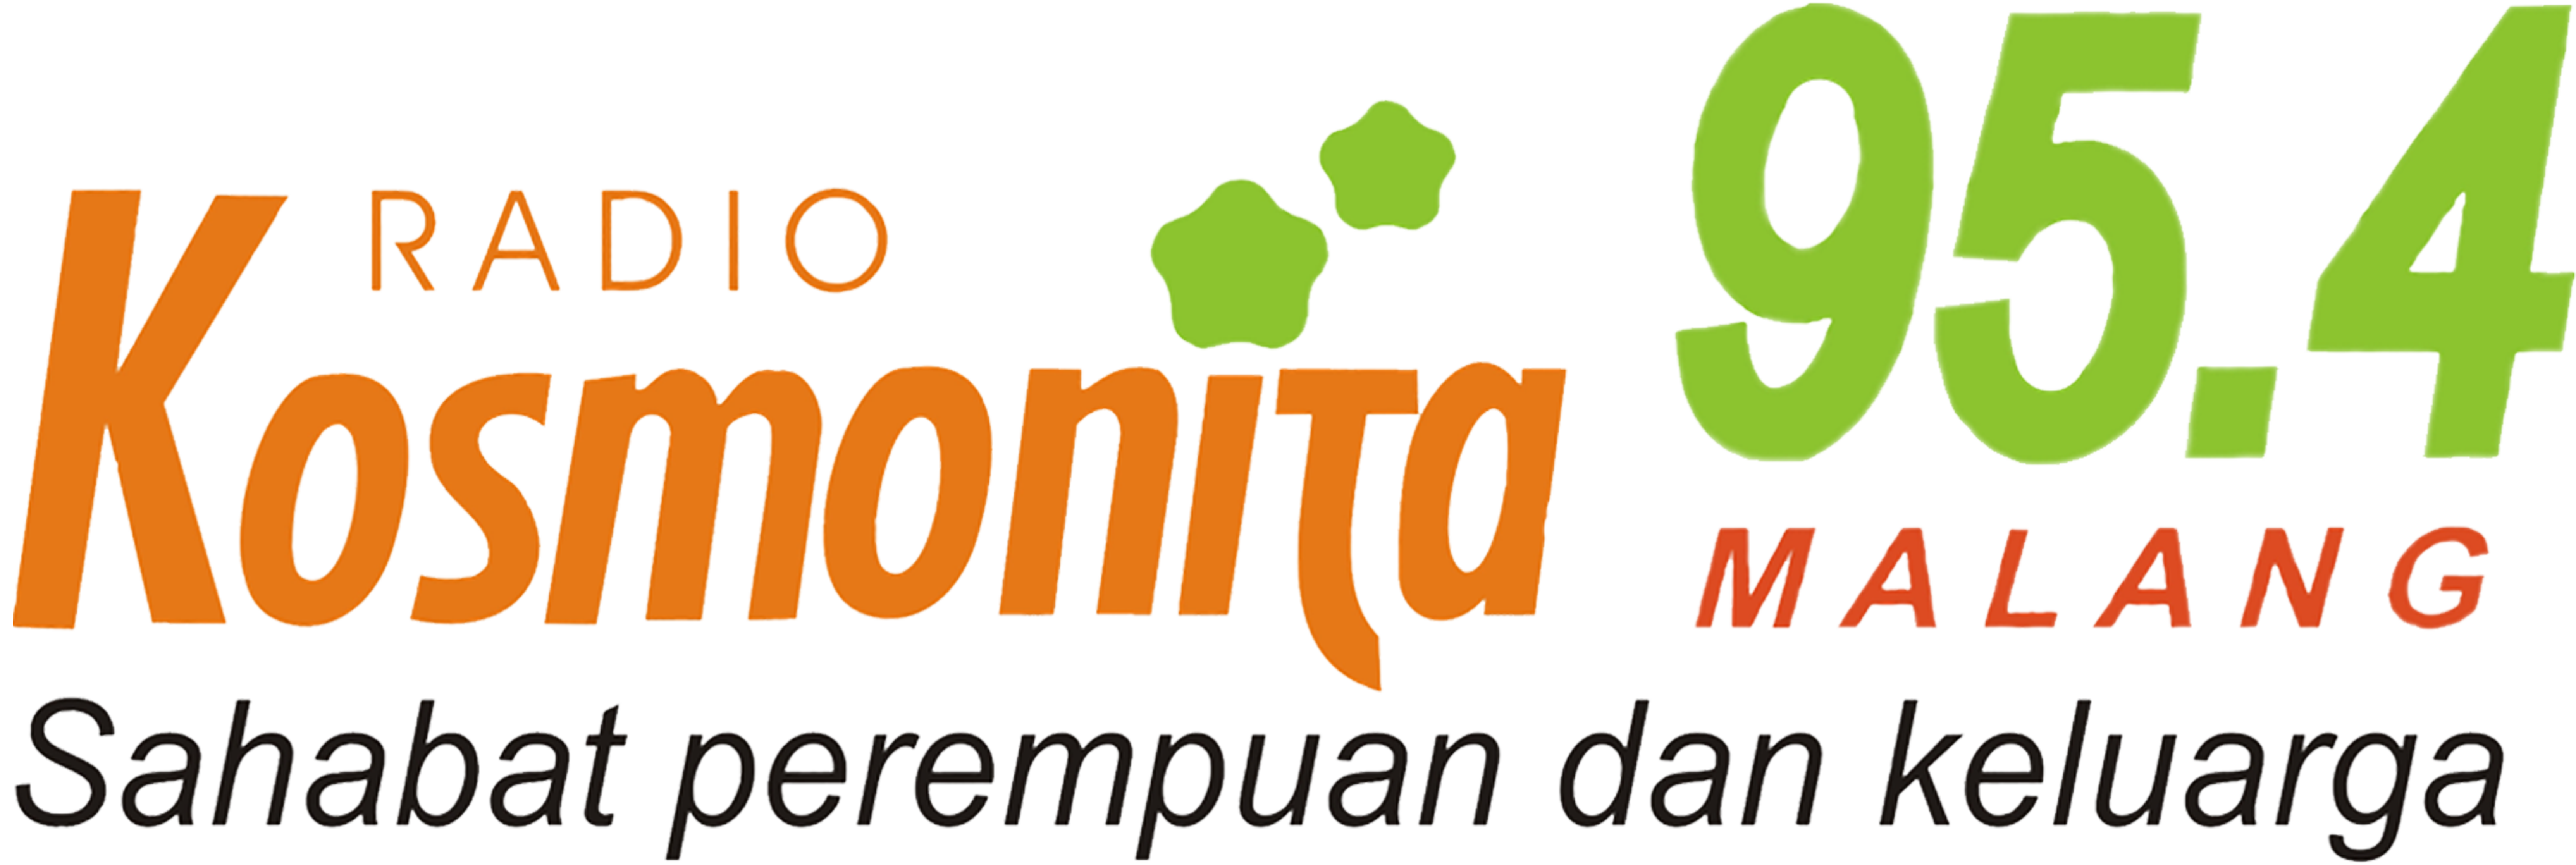 kosmonita-logo-1 (1)